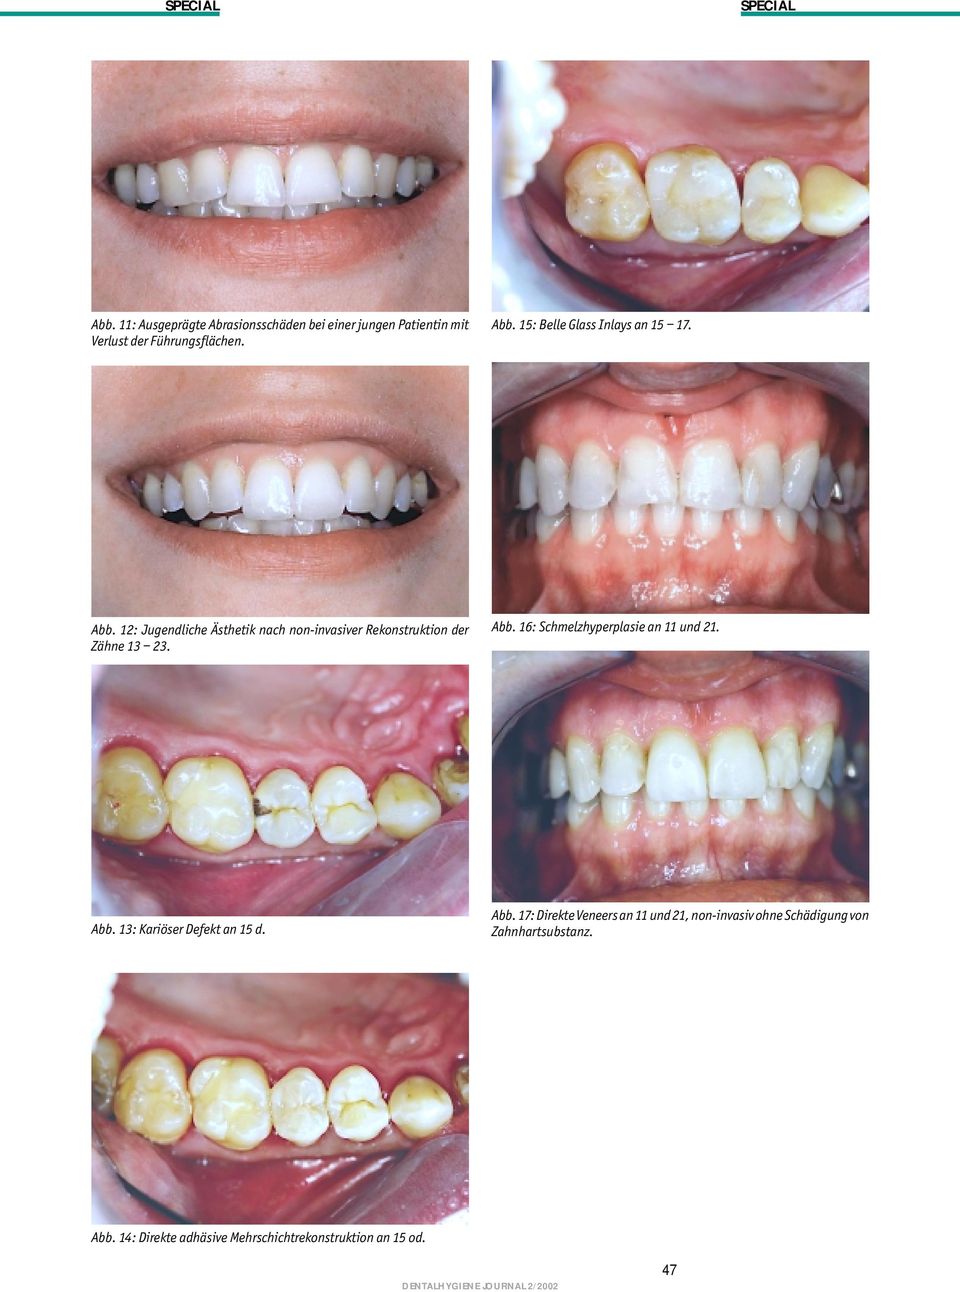 12: Jugendliche Ästhetik nach non-invasiver Rekonstruktion der Zähne 13 23. Abb.